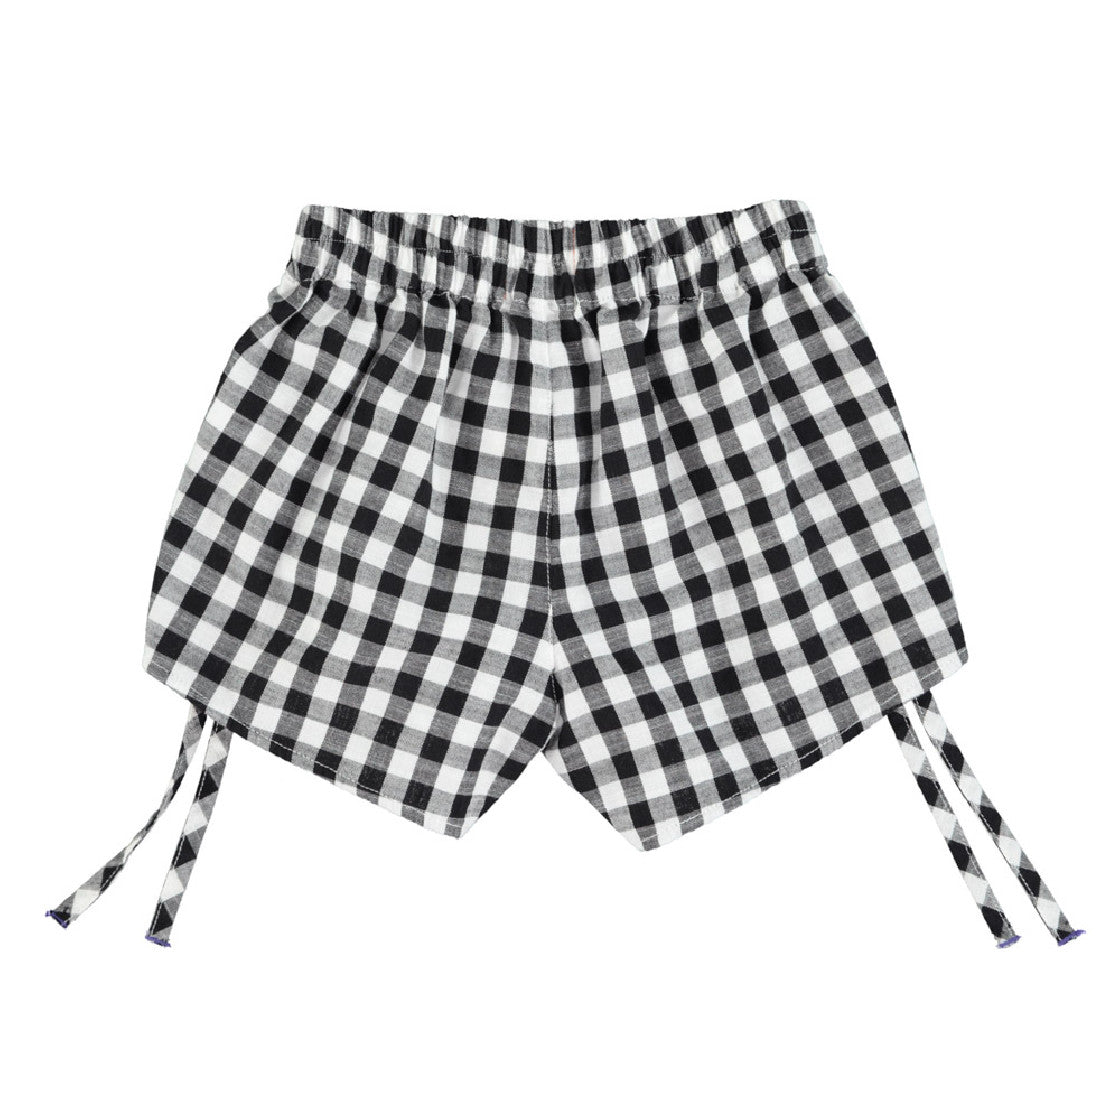 Piupiuchick shorts black & white checkered